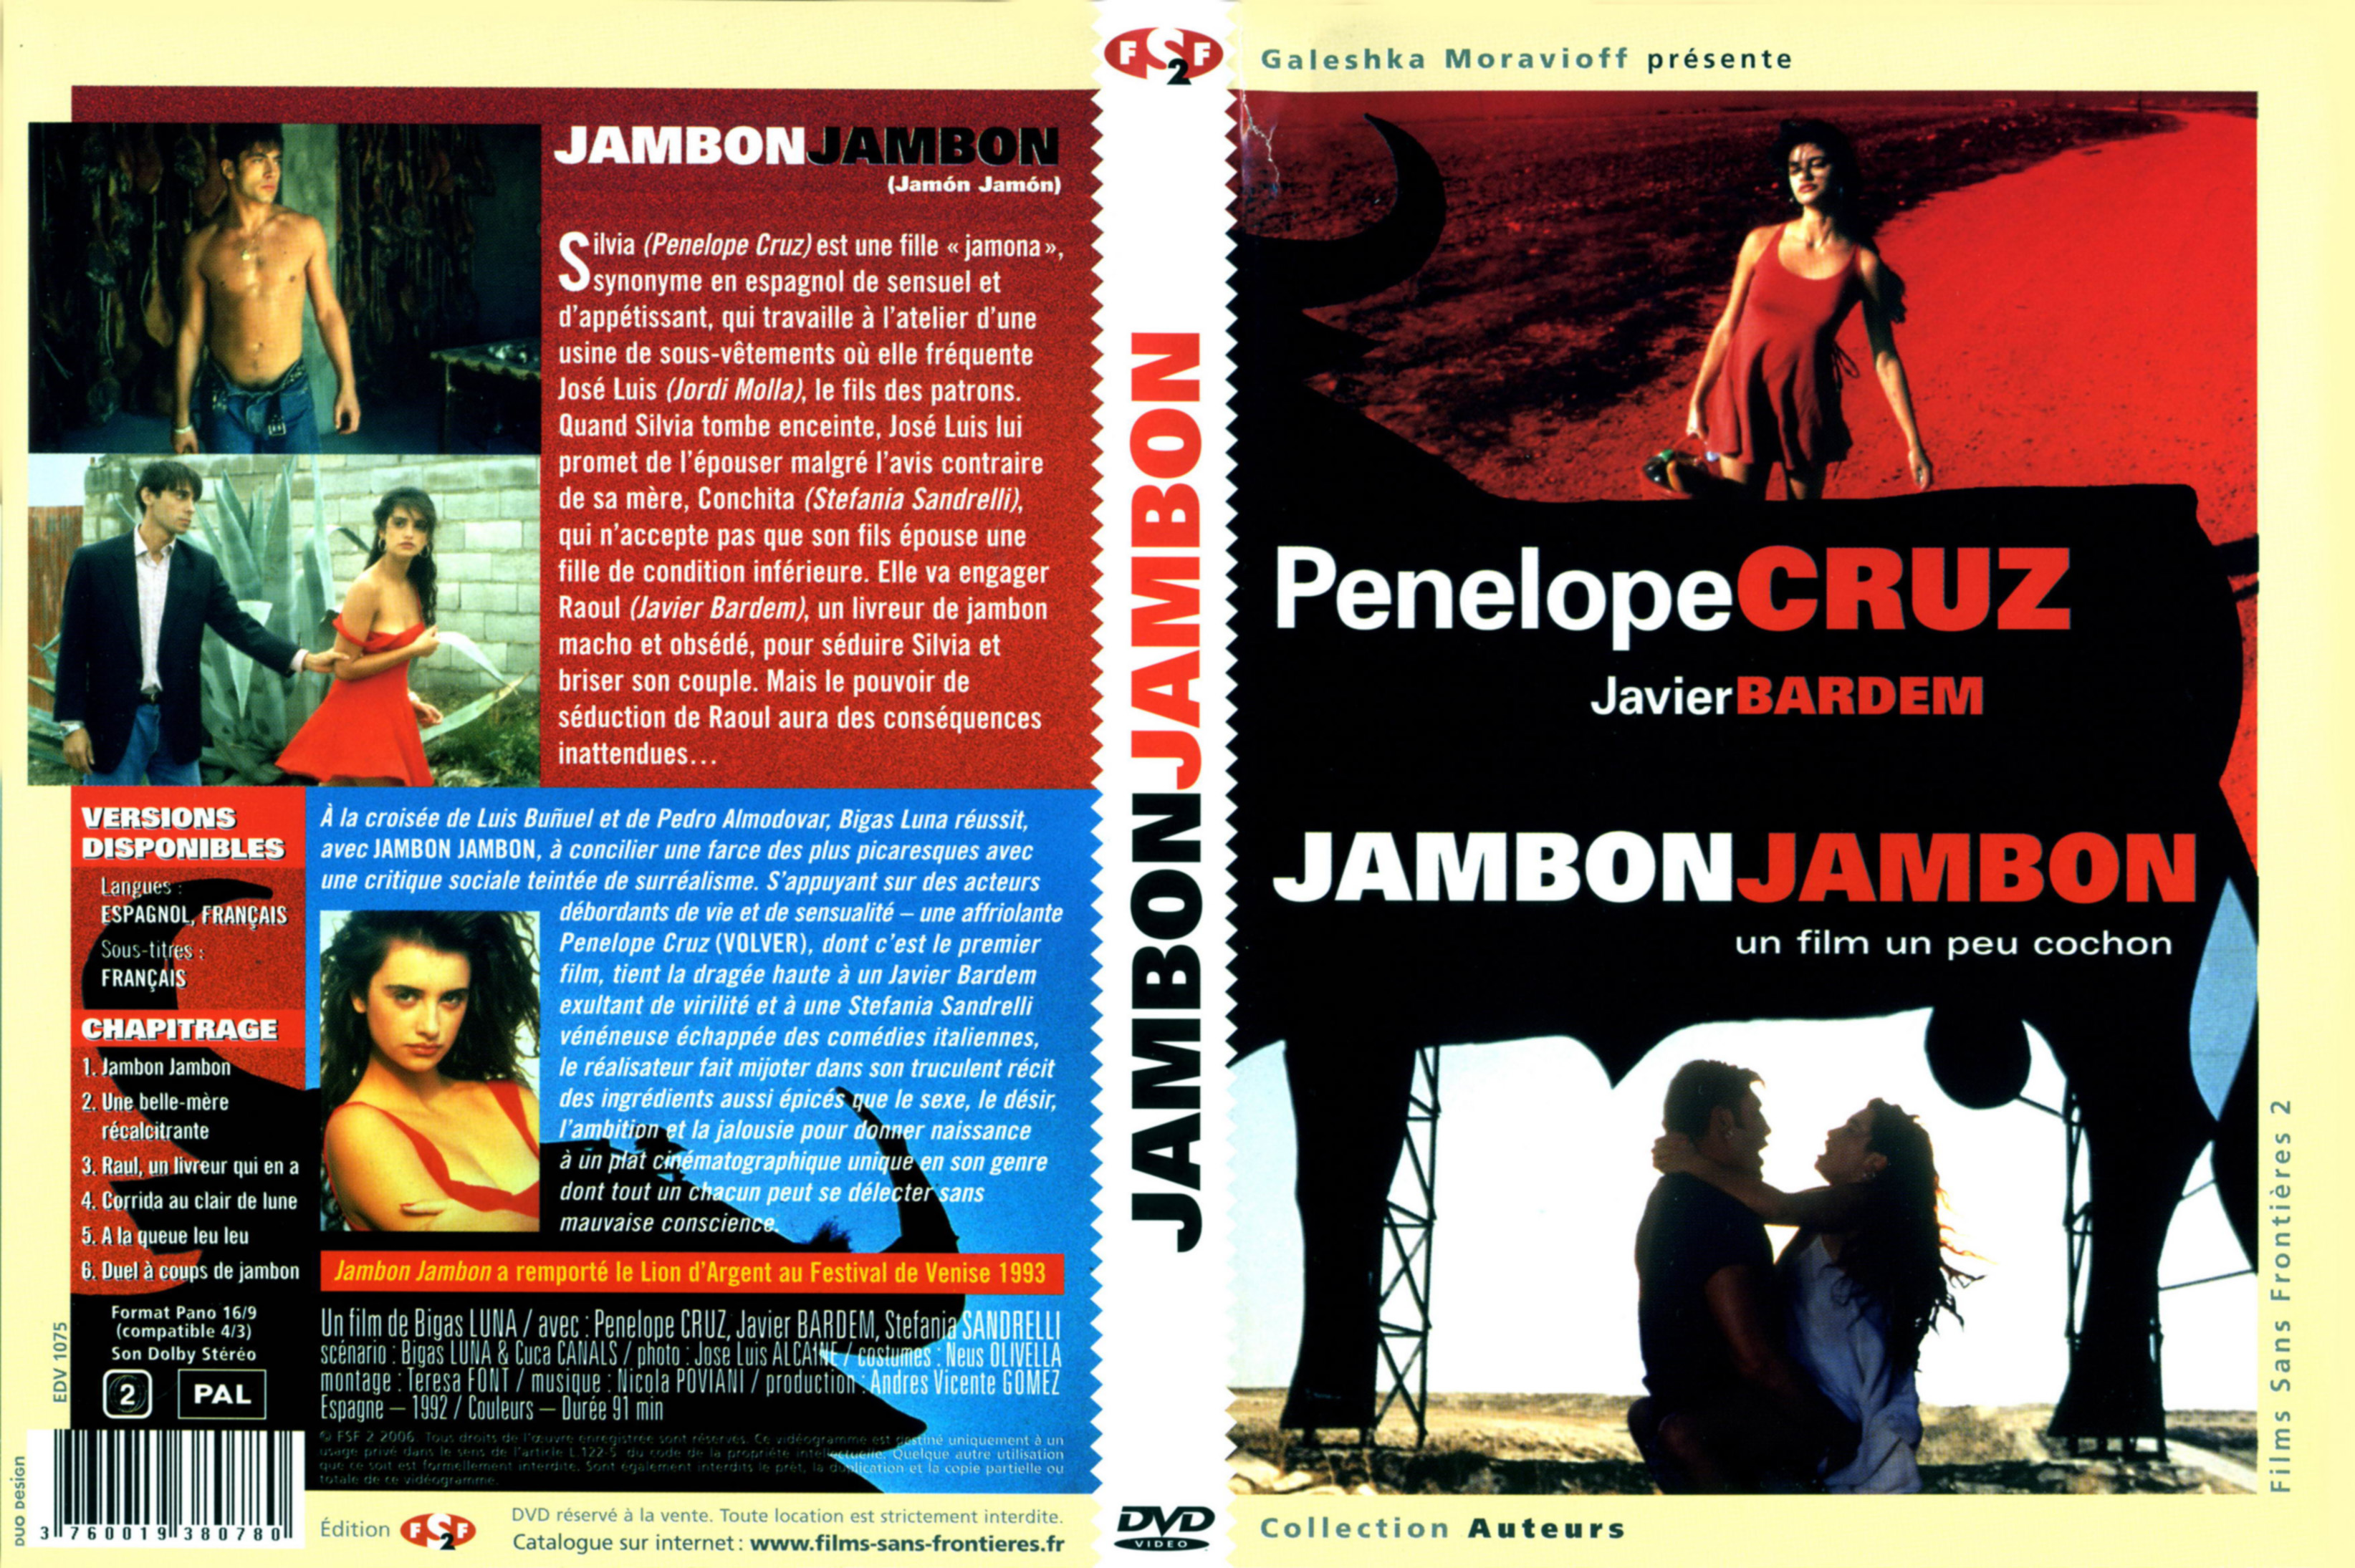 Jaquette DVD Jambon Jambon